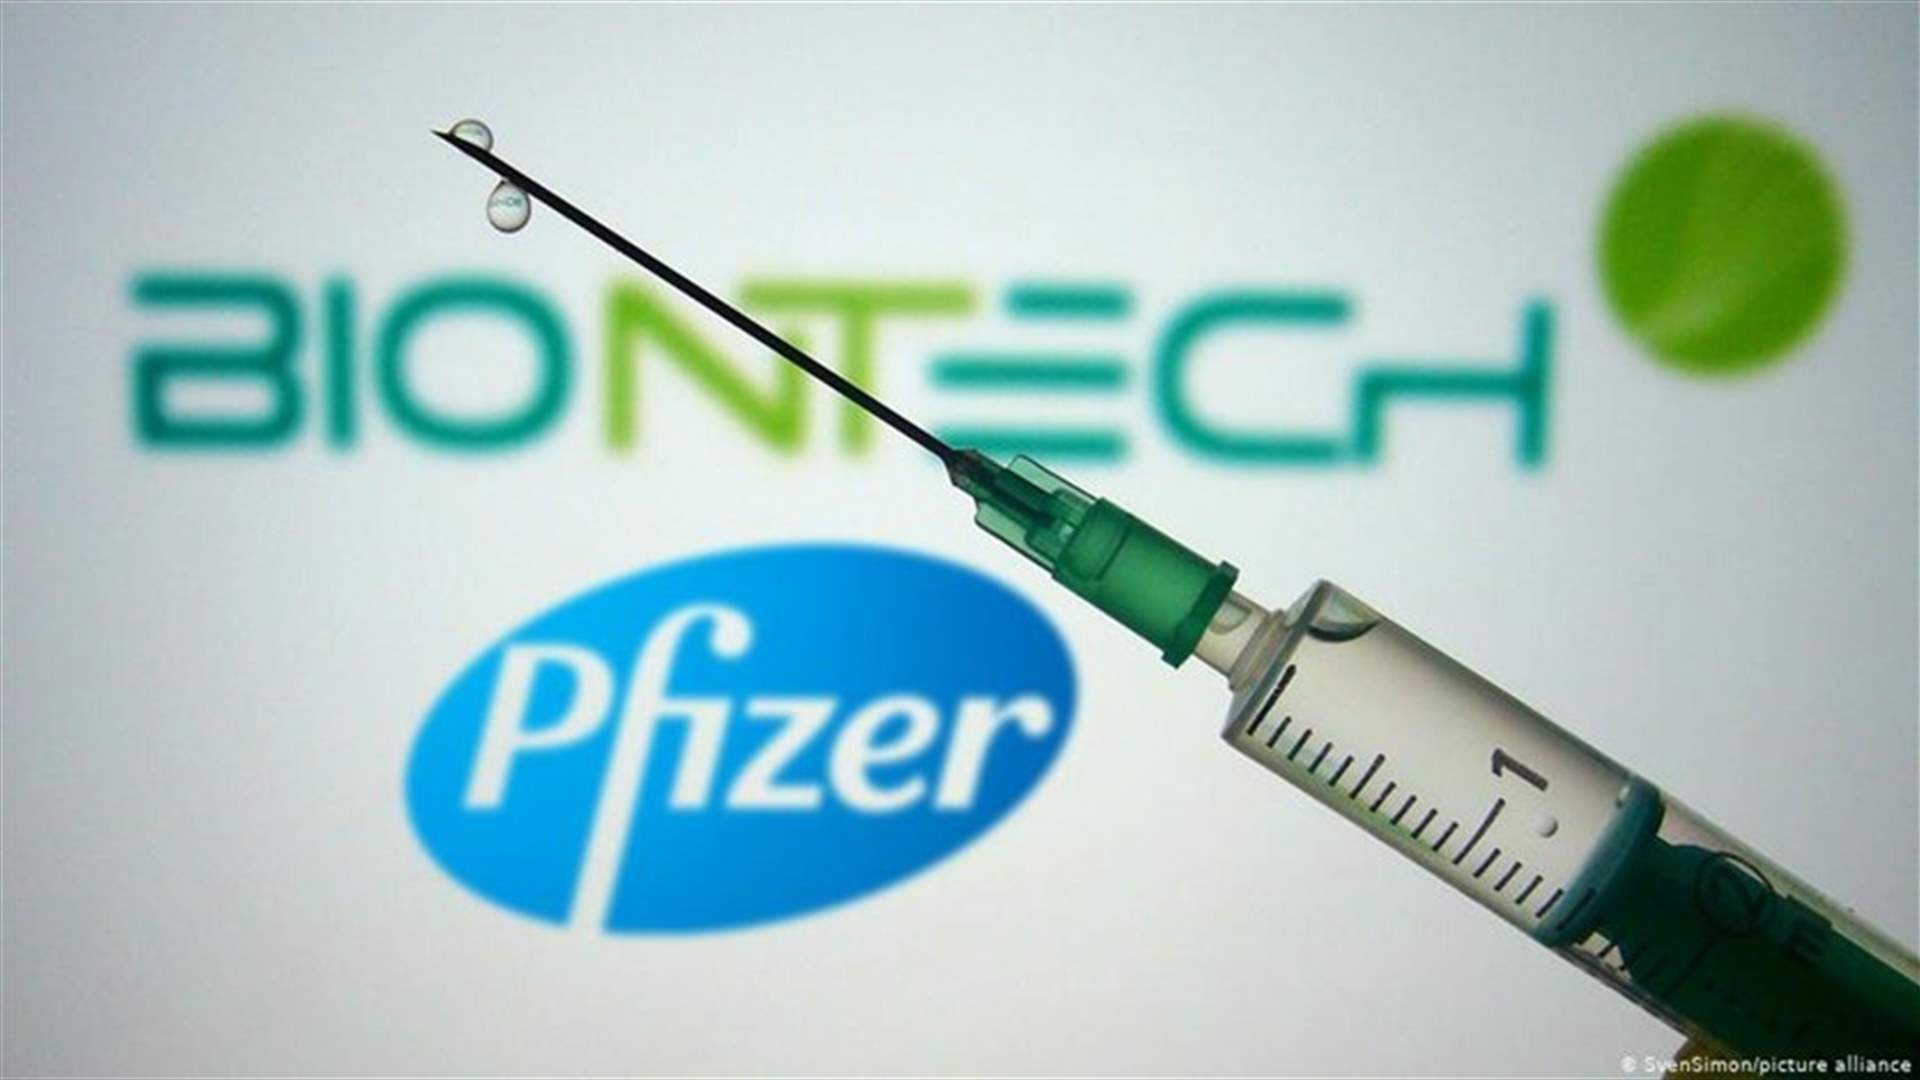 بايونتيك وفايزر تقدمان طلبا للحصول على ترخيص للقاح كوفيد-19 في الاتحاد الاوروبي